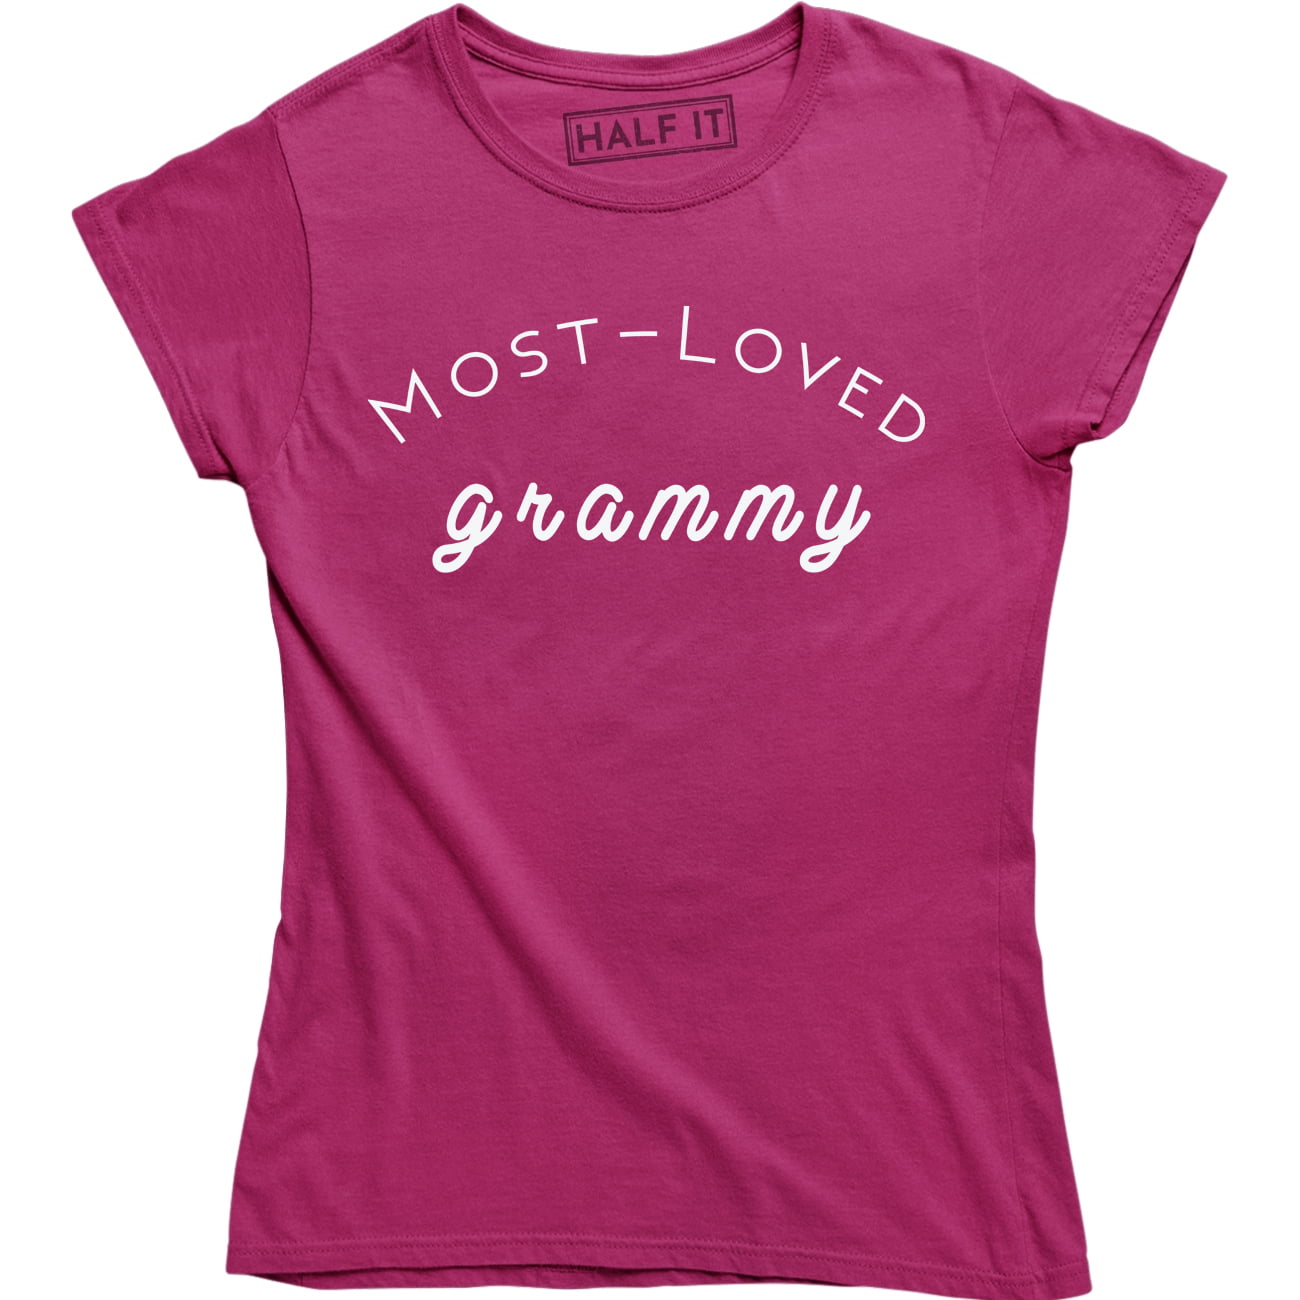 Most Loved Grammy Shirt Sweet Grandma Mother's Day Shirt Women's T-shirt Tee